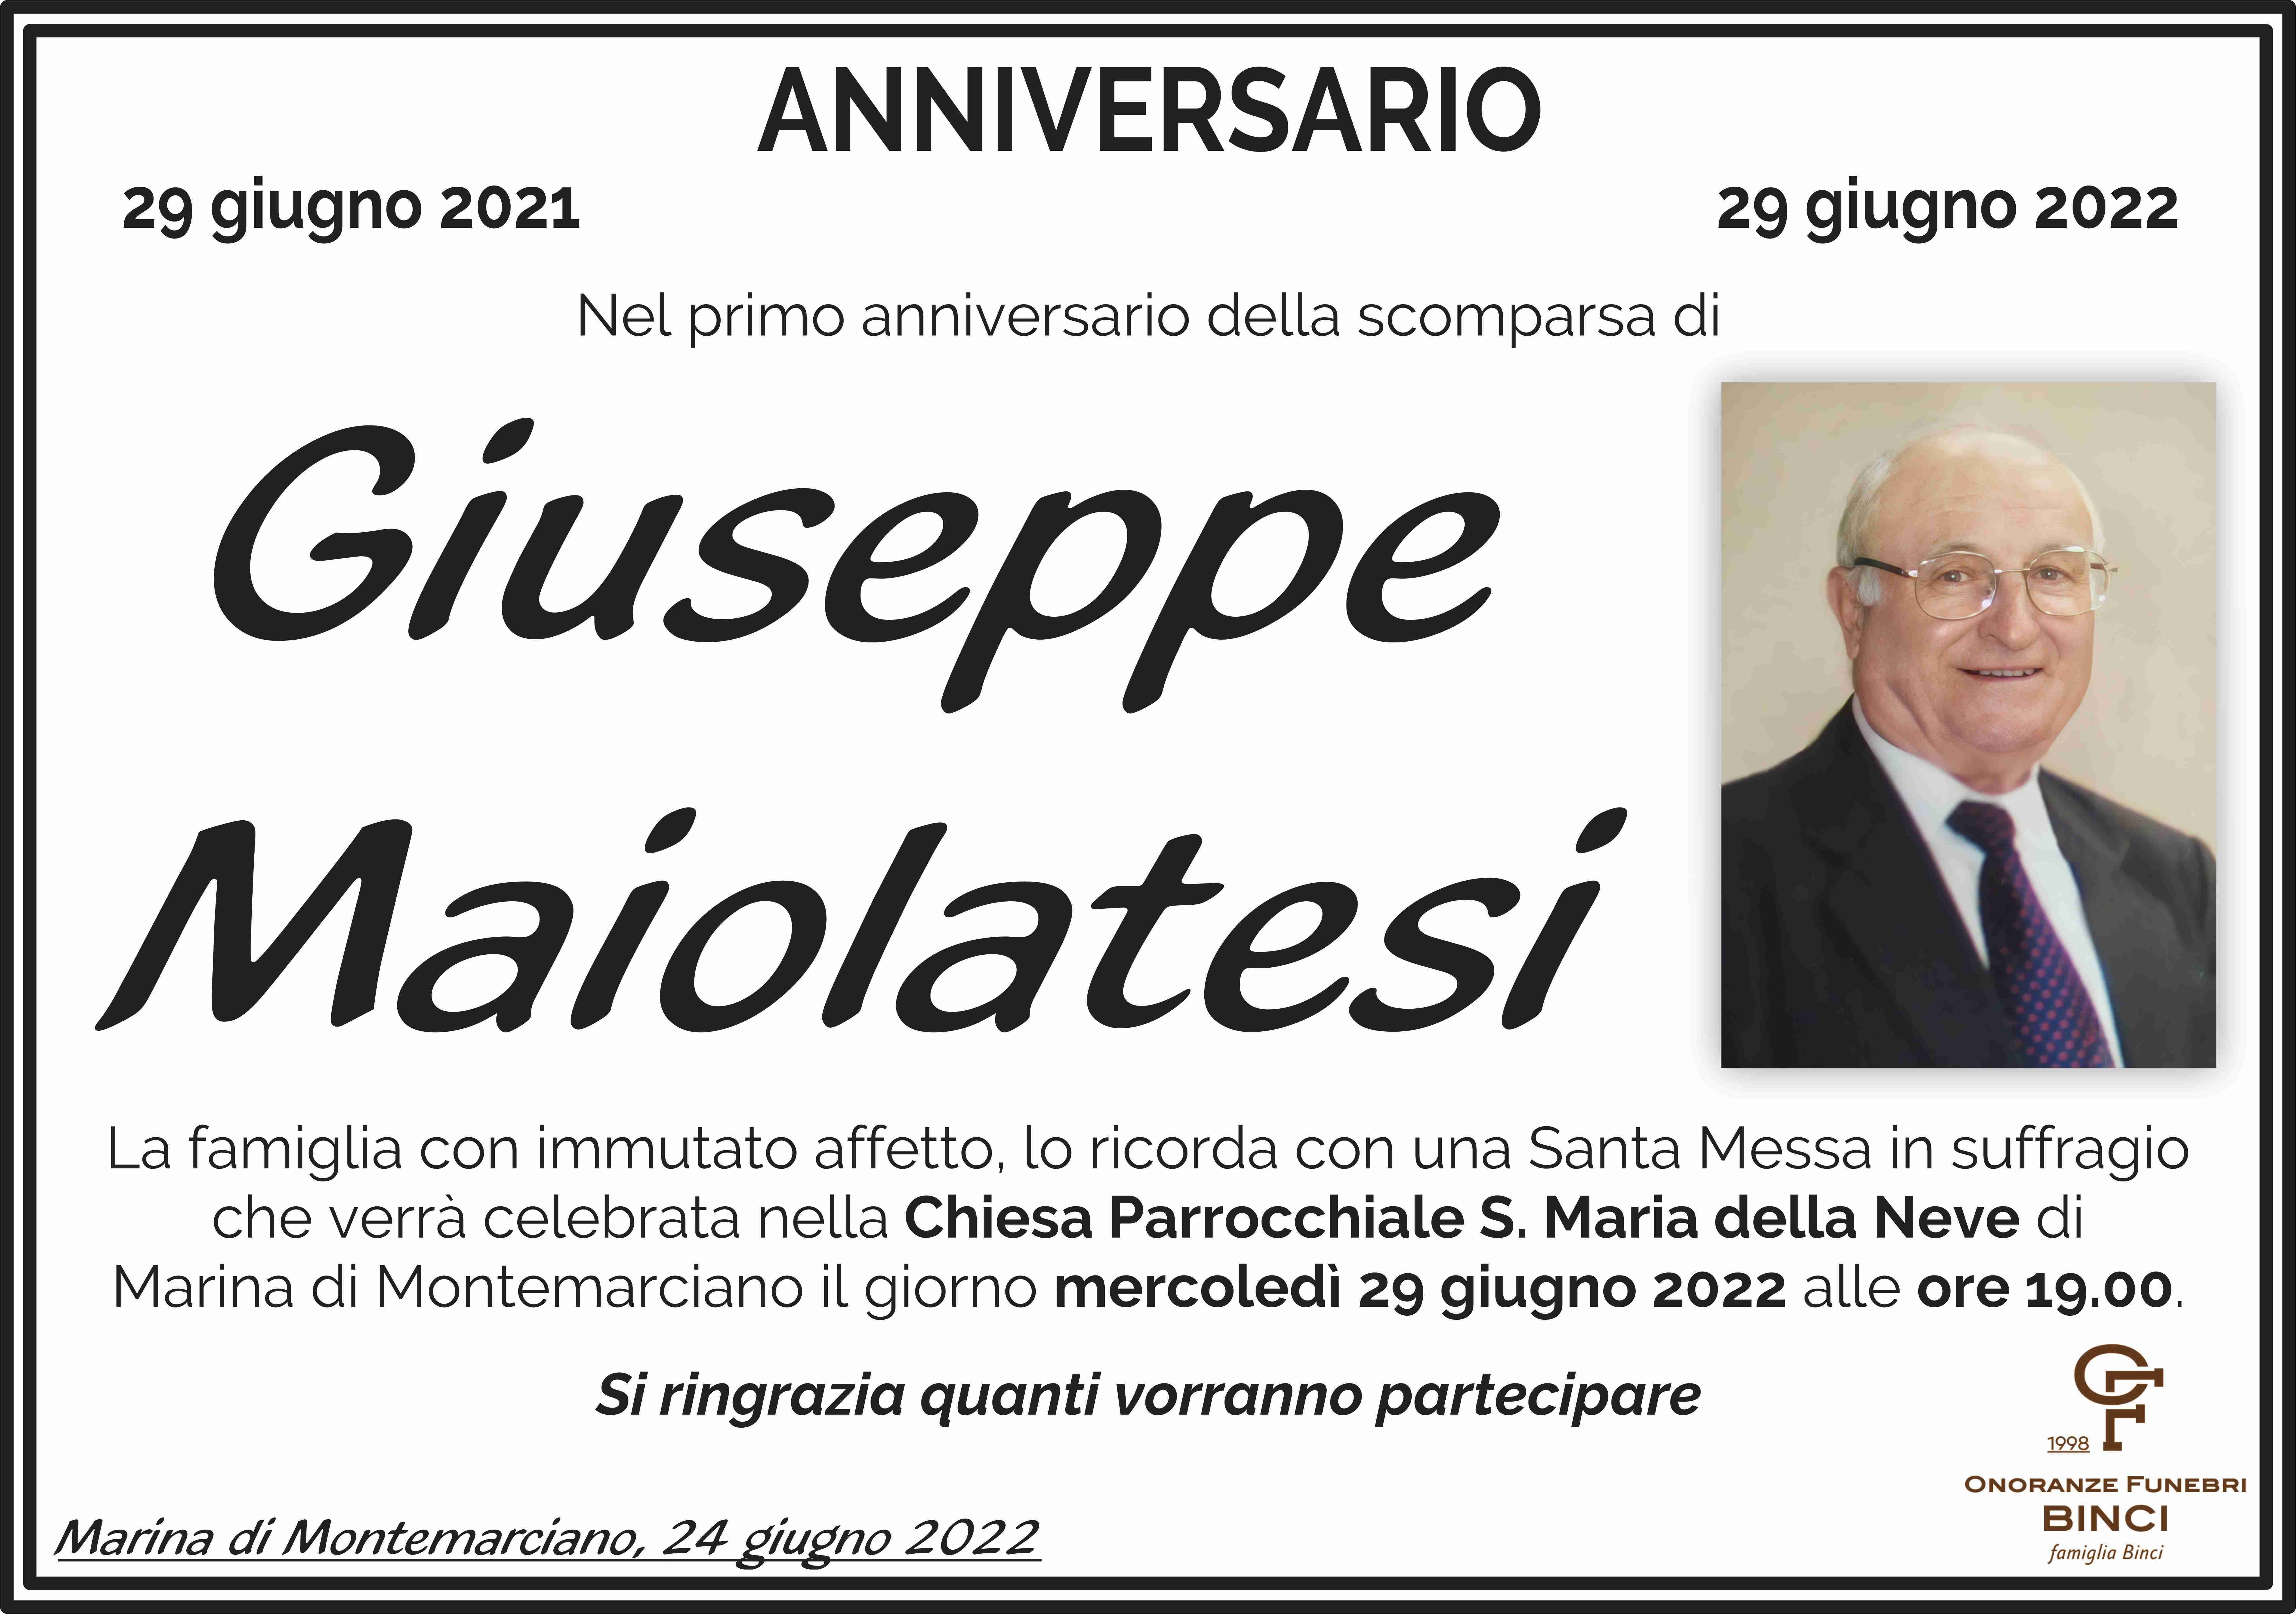 Giuseppe Maiolatesi